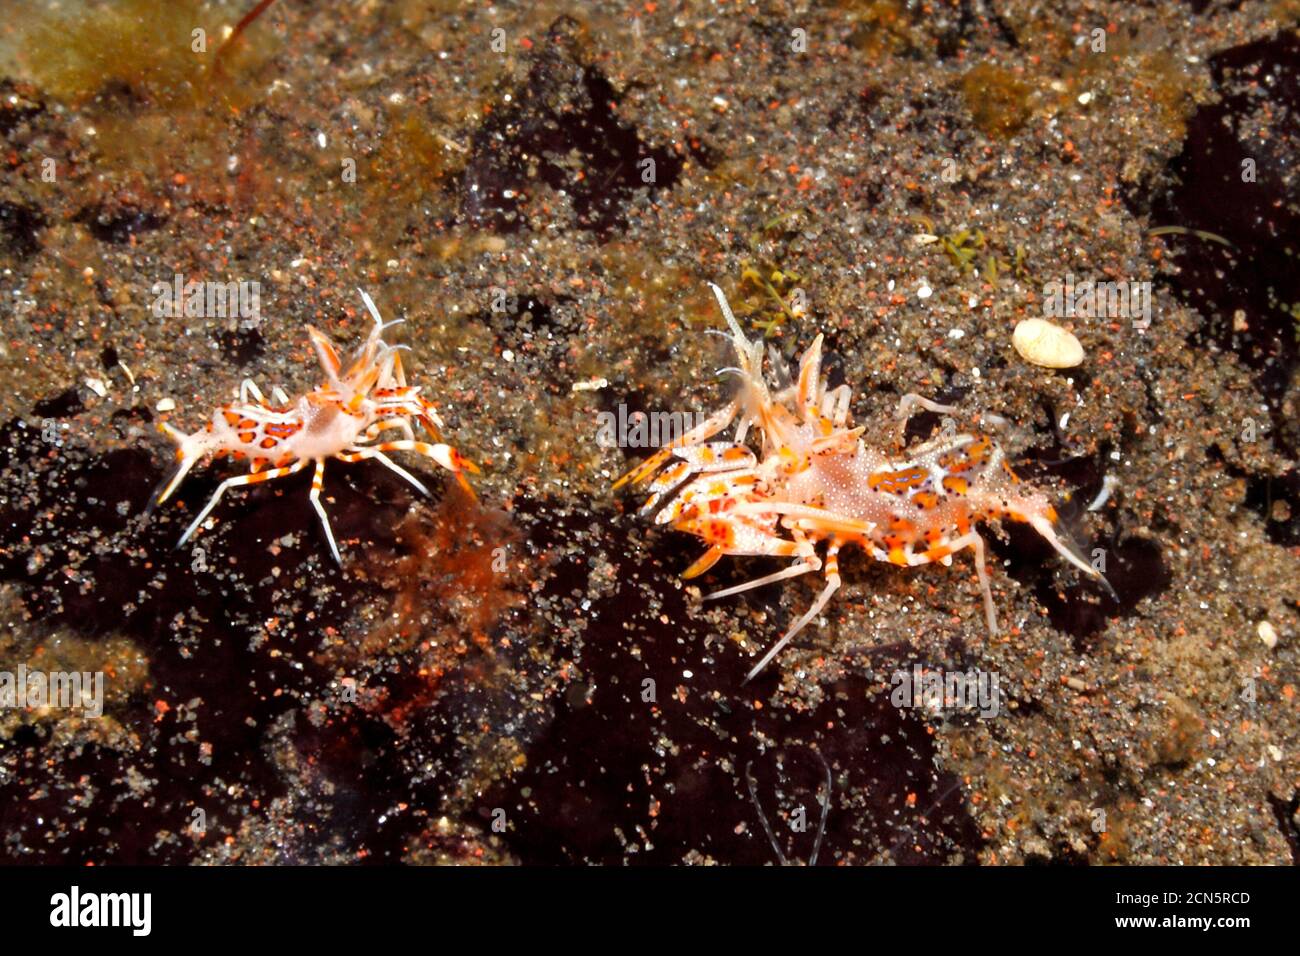 Crevettes tigrées épineuses mâles et femelles, Phyllognathia ceratophthalma. Également connu sous le nom de crevettes Bongo. Tulamben, Bali, Indonésie. Mer de Bali, Océan Indien Banque D'Images